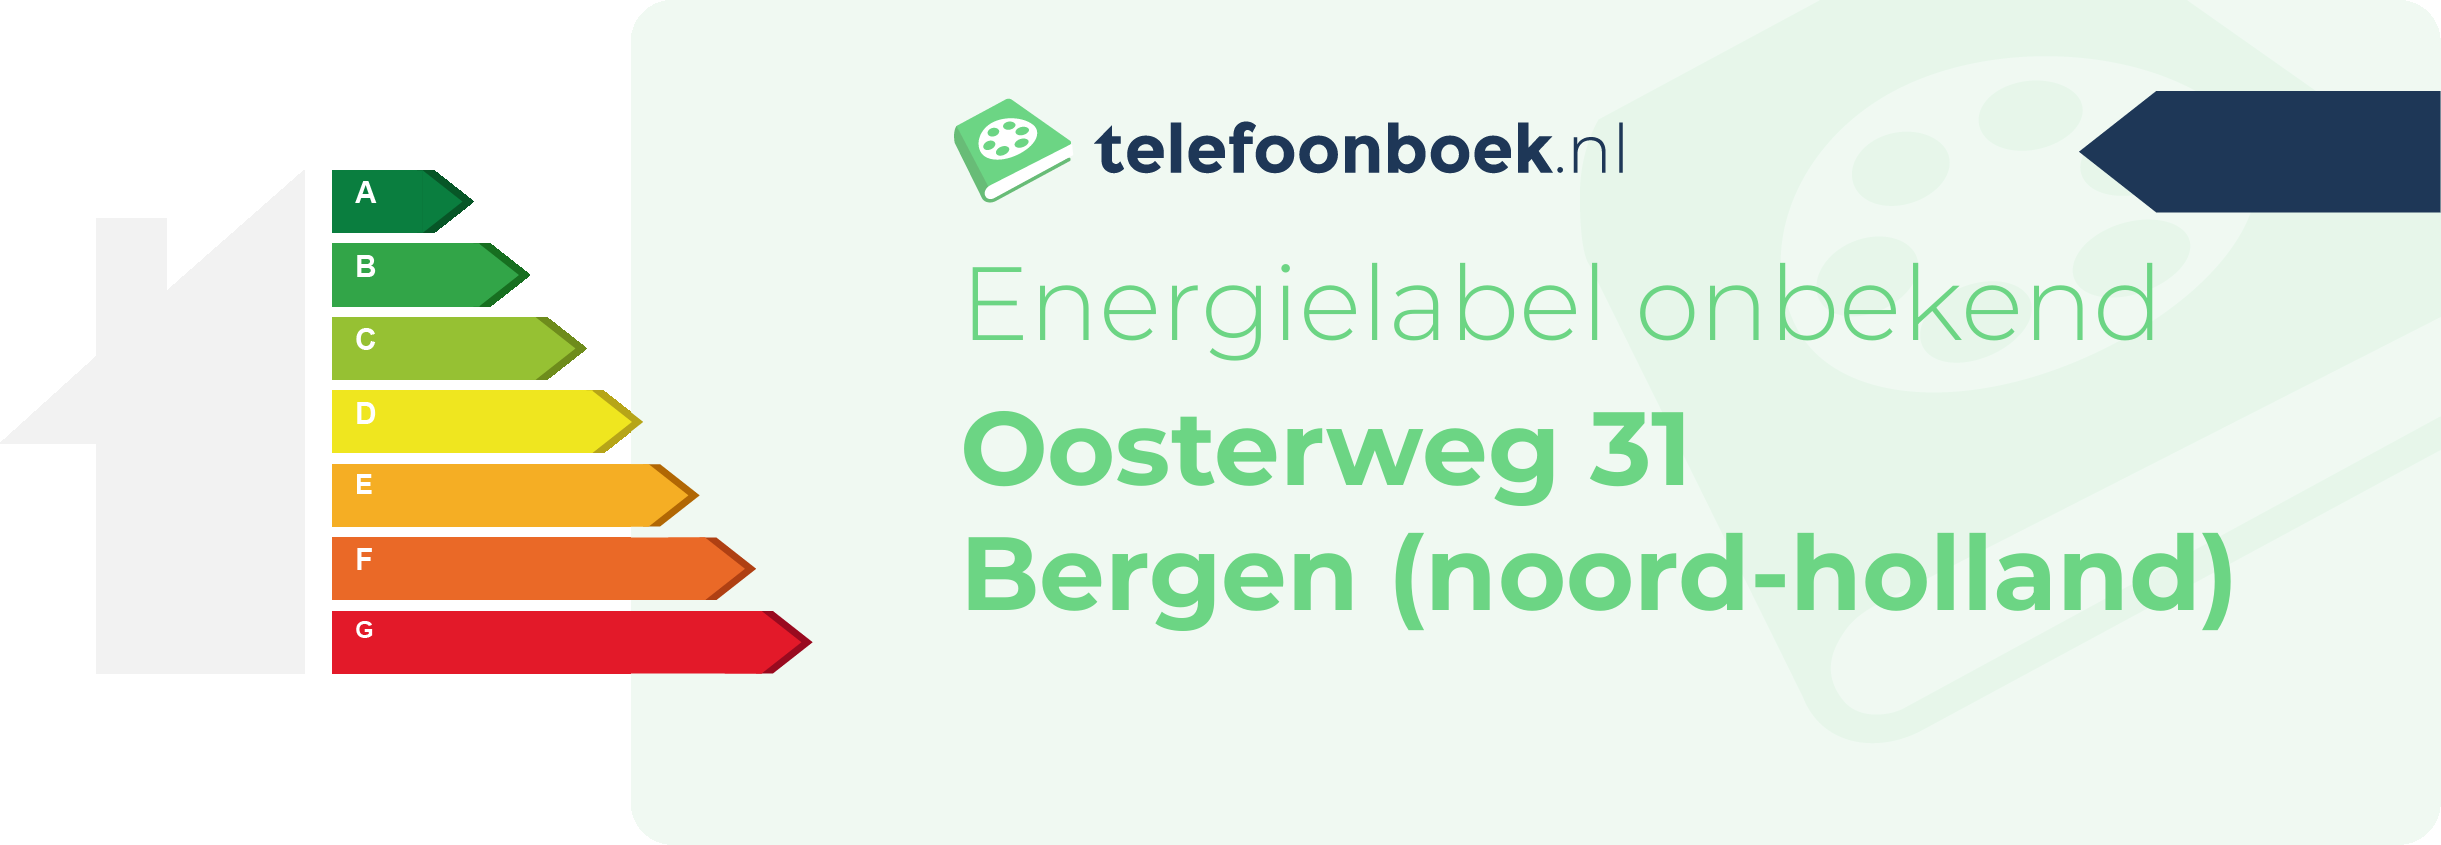 Energielabel Oosterweg 31 Bergen (Noord-Holland)